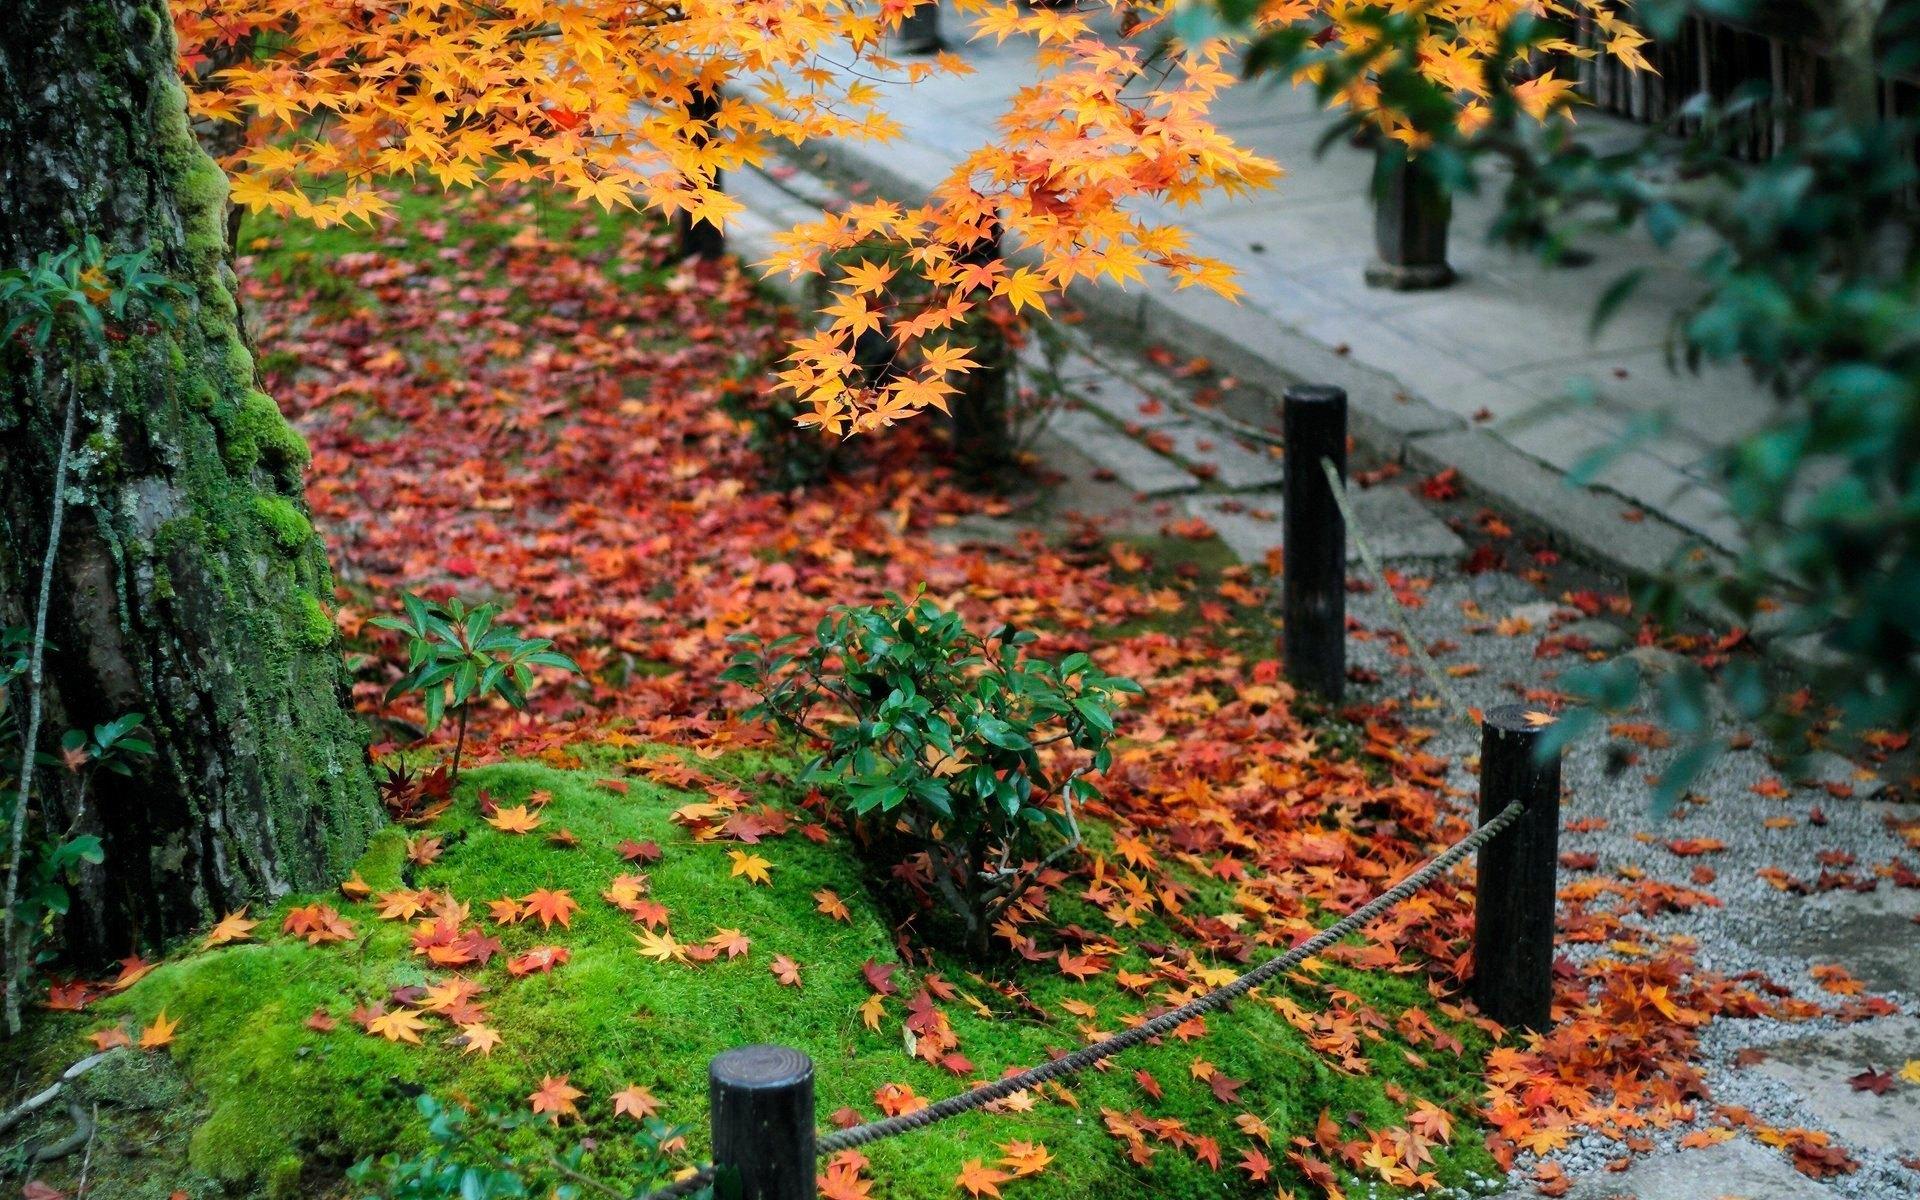 林中金色秋天落叶唯美风景桌面壁纸-壁纸图片大全